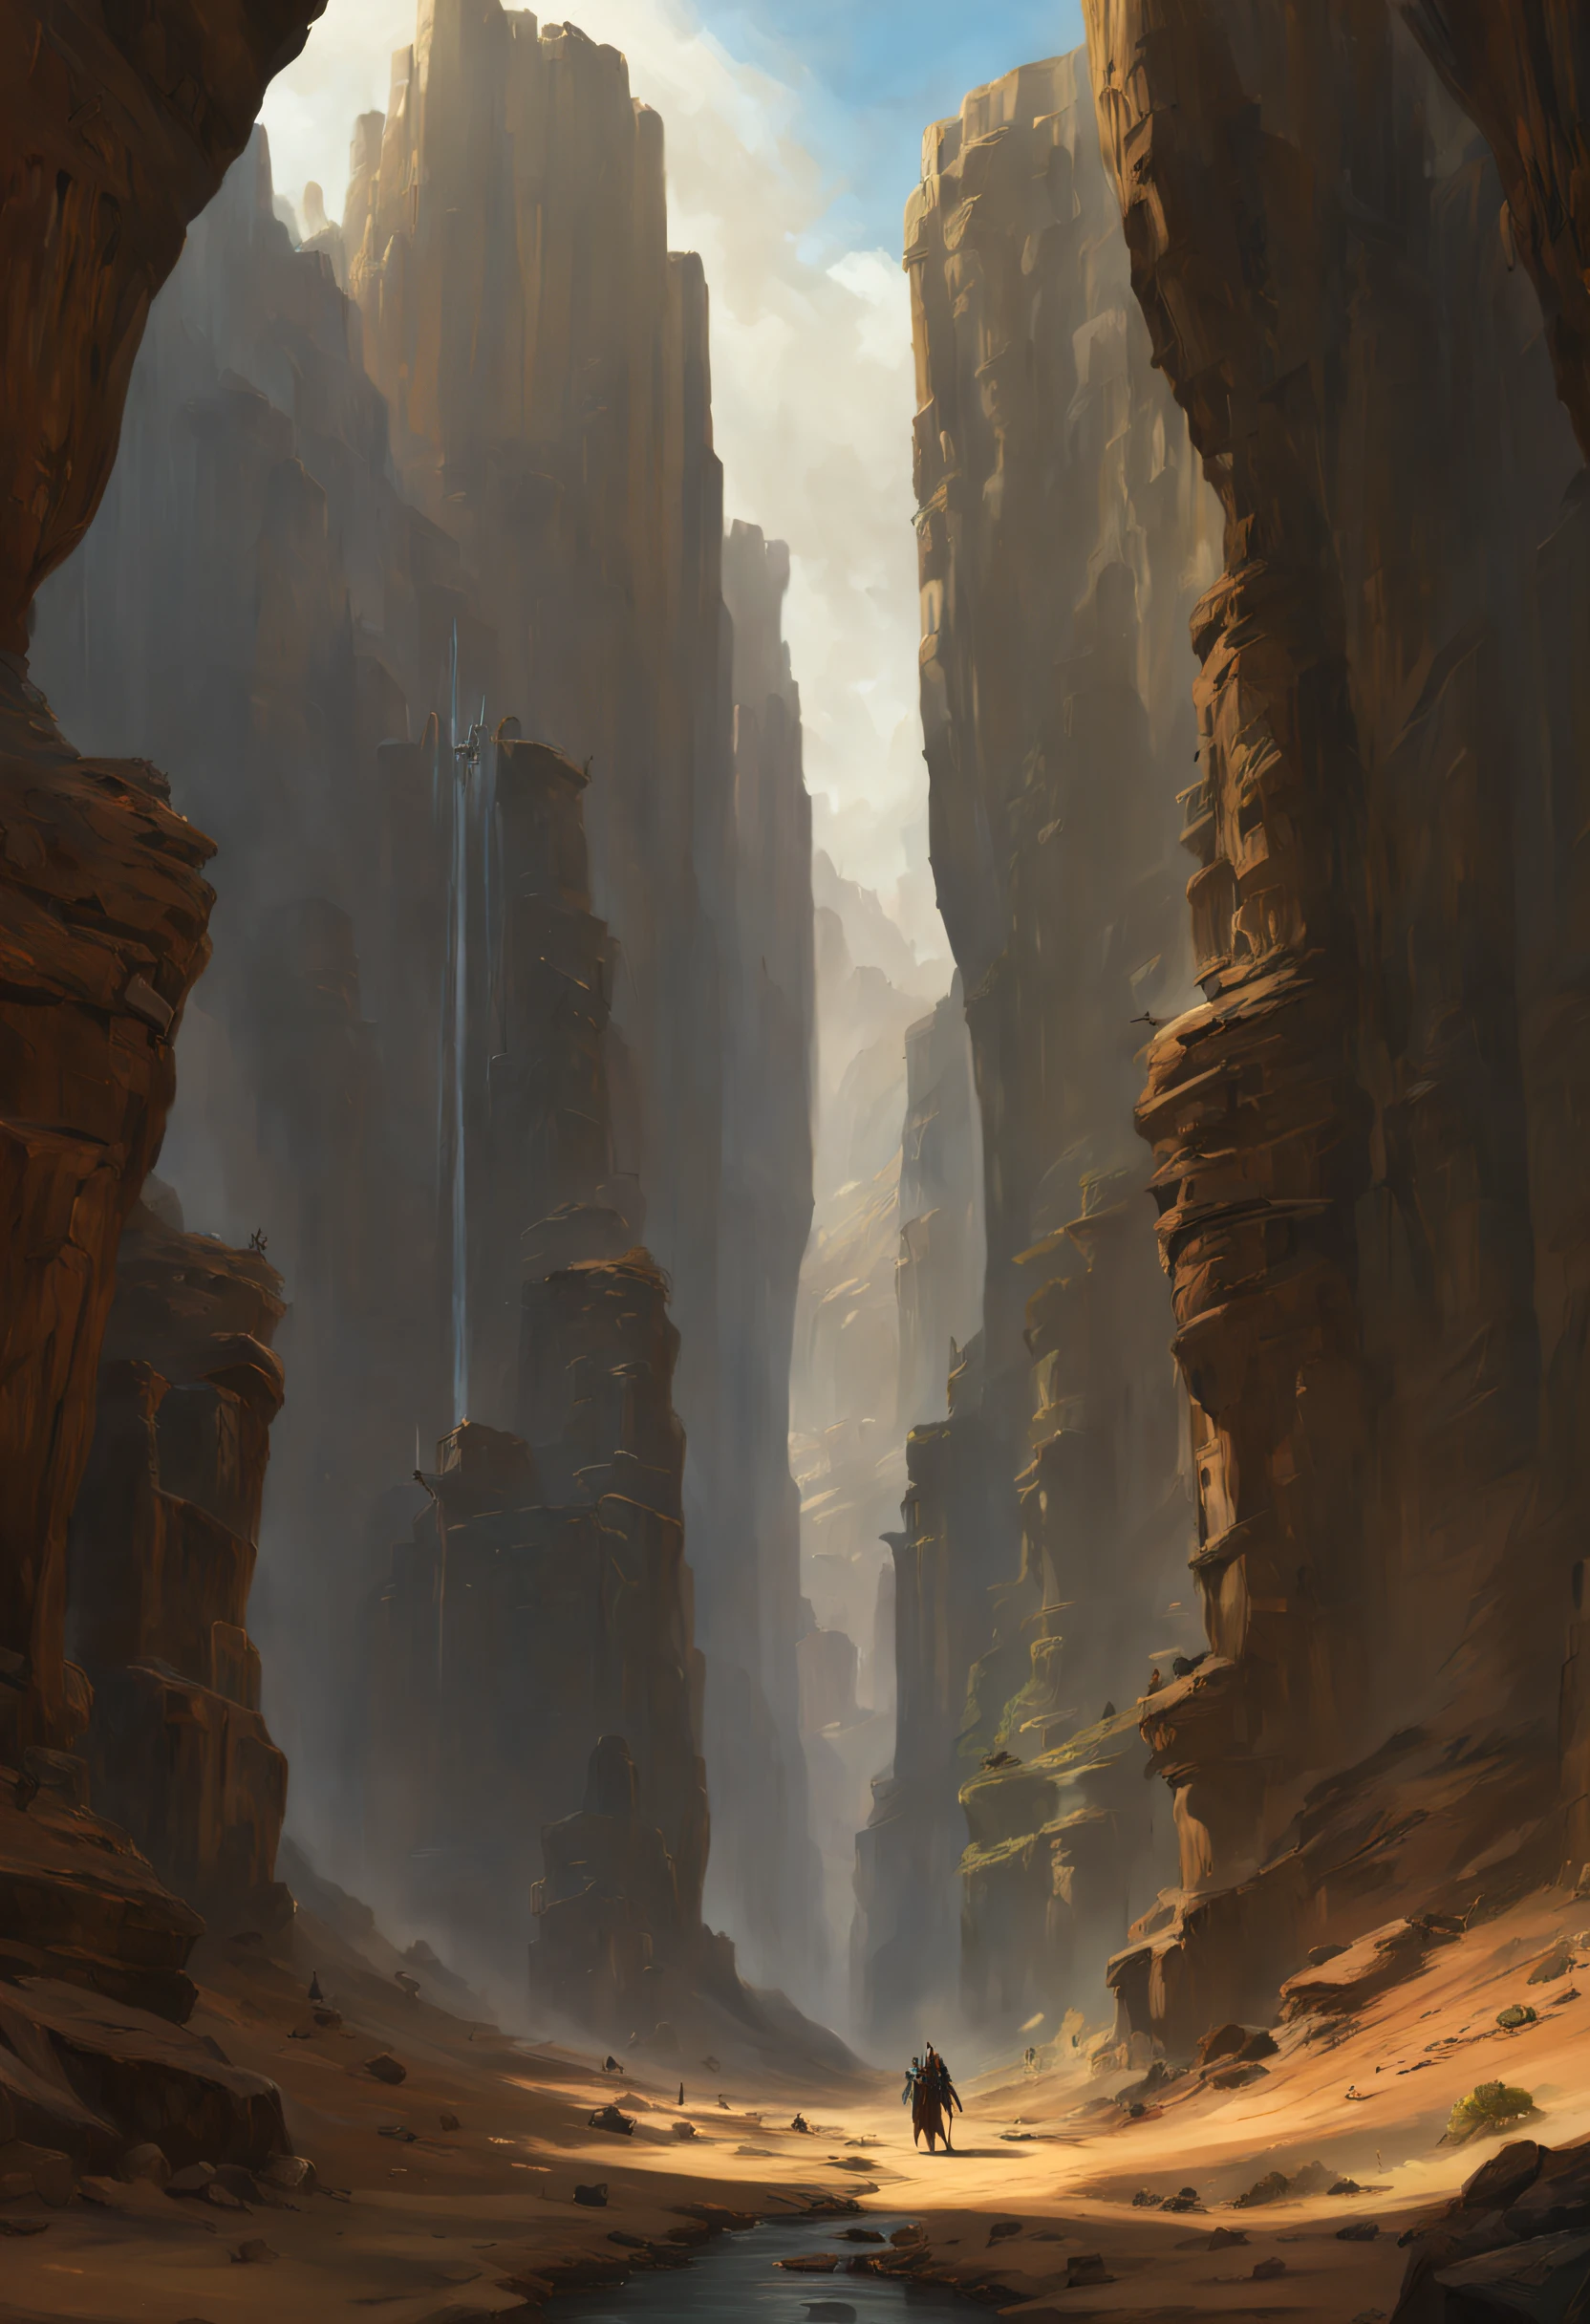 Il y a un canyon spacieux，Le canyon est entouré de statues tenant des armes.，Art conceptuel 4K de Morrowind, art conceptuel pictural, Pointé! art conceptuel de peinture mate, Noah Bradley Concept Art, art conceptuel |